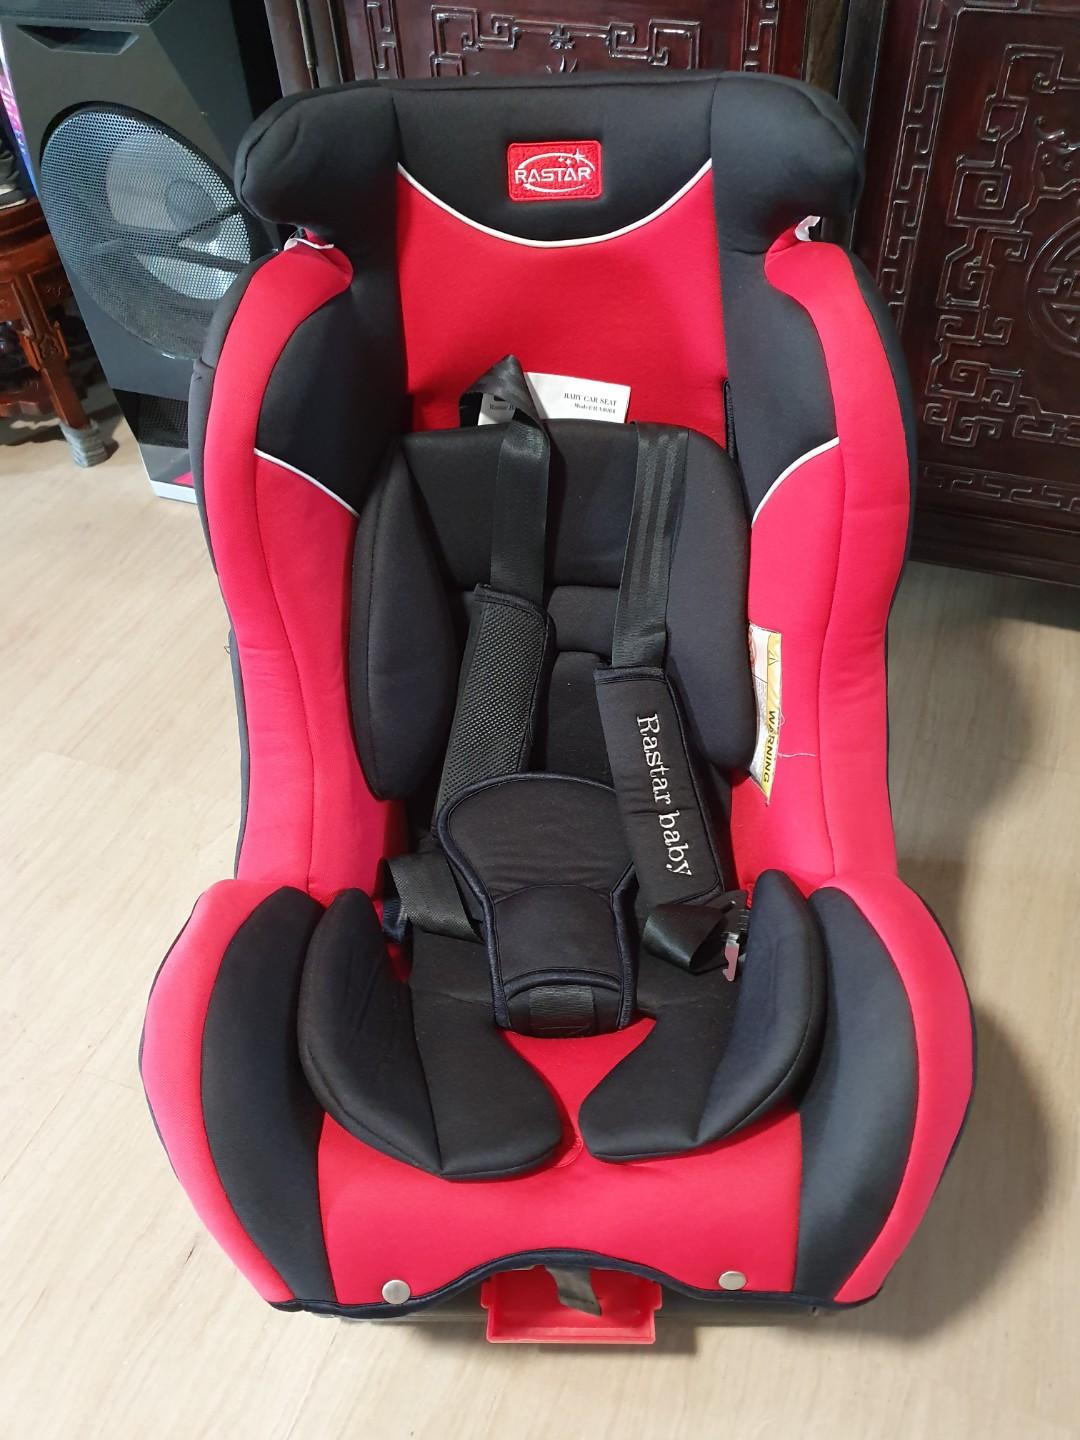 rastar baby car seat